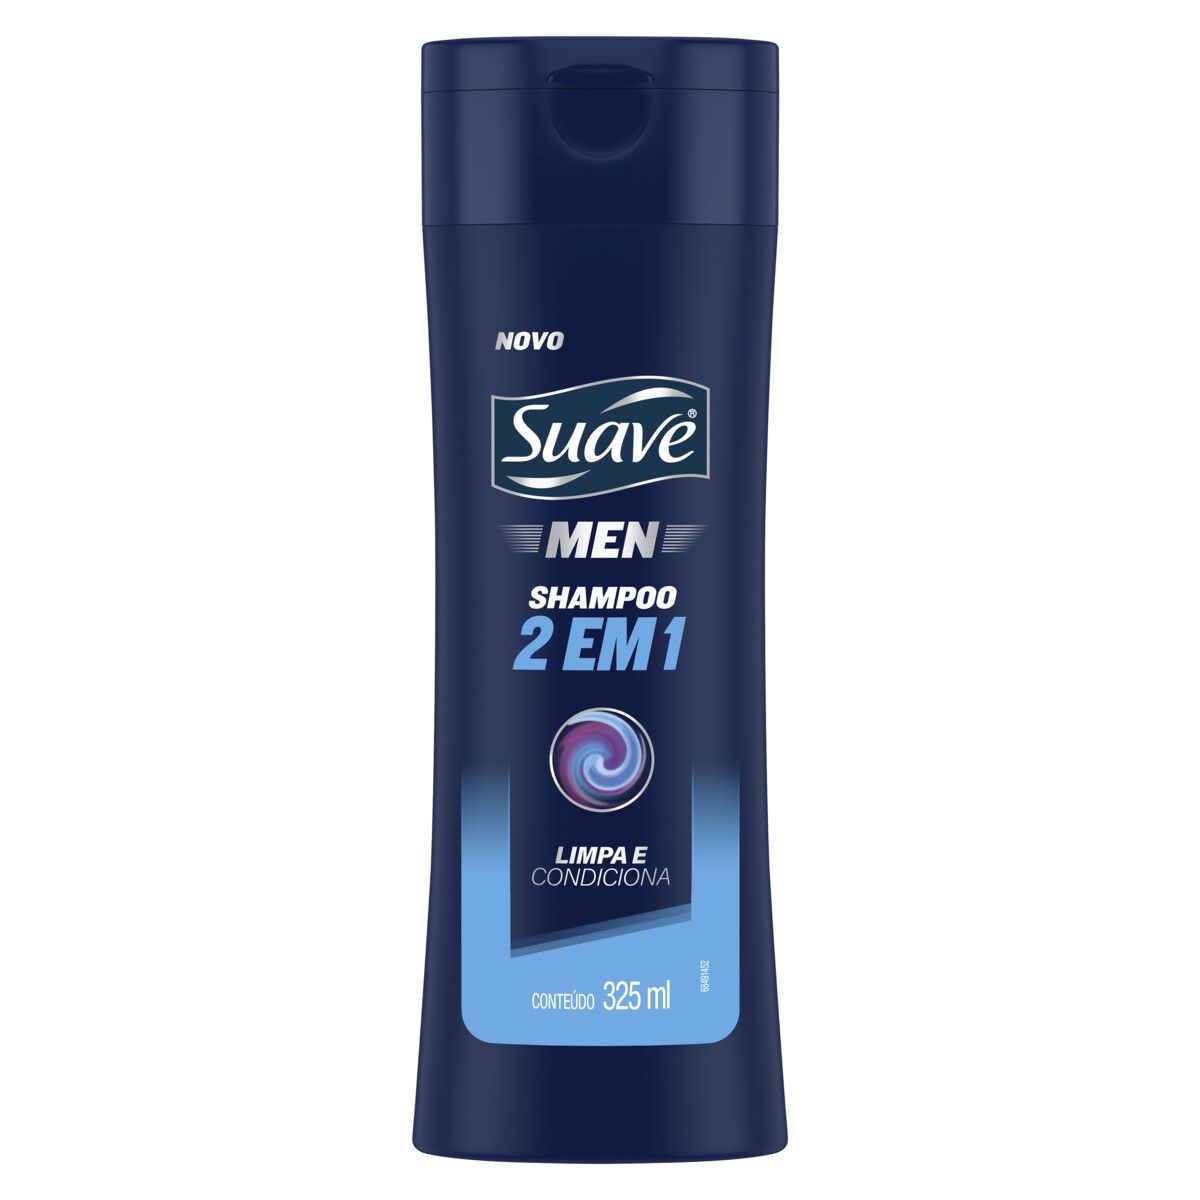 Shampoo 2 em 1 Suave Men Frasco 325ml